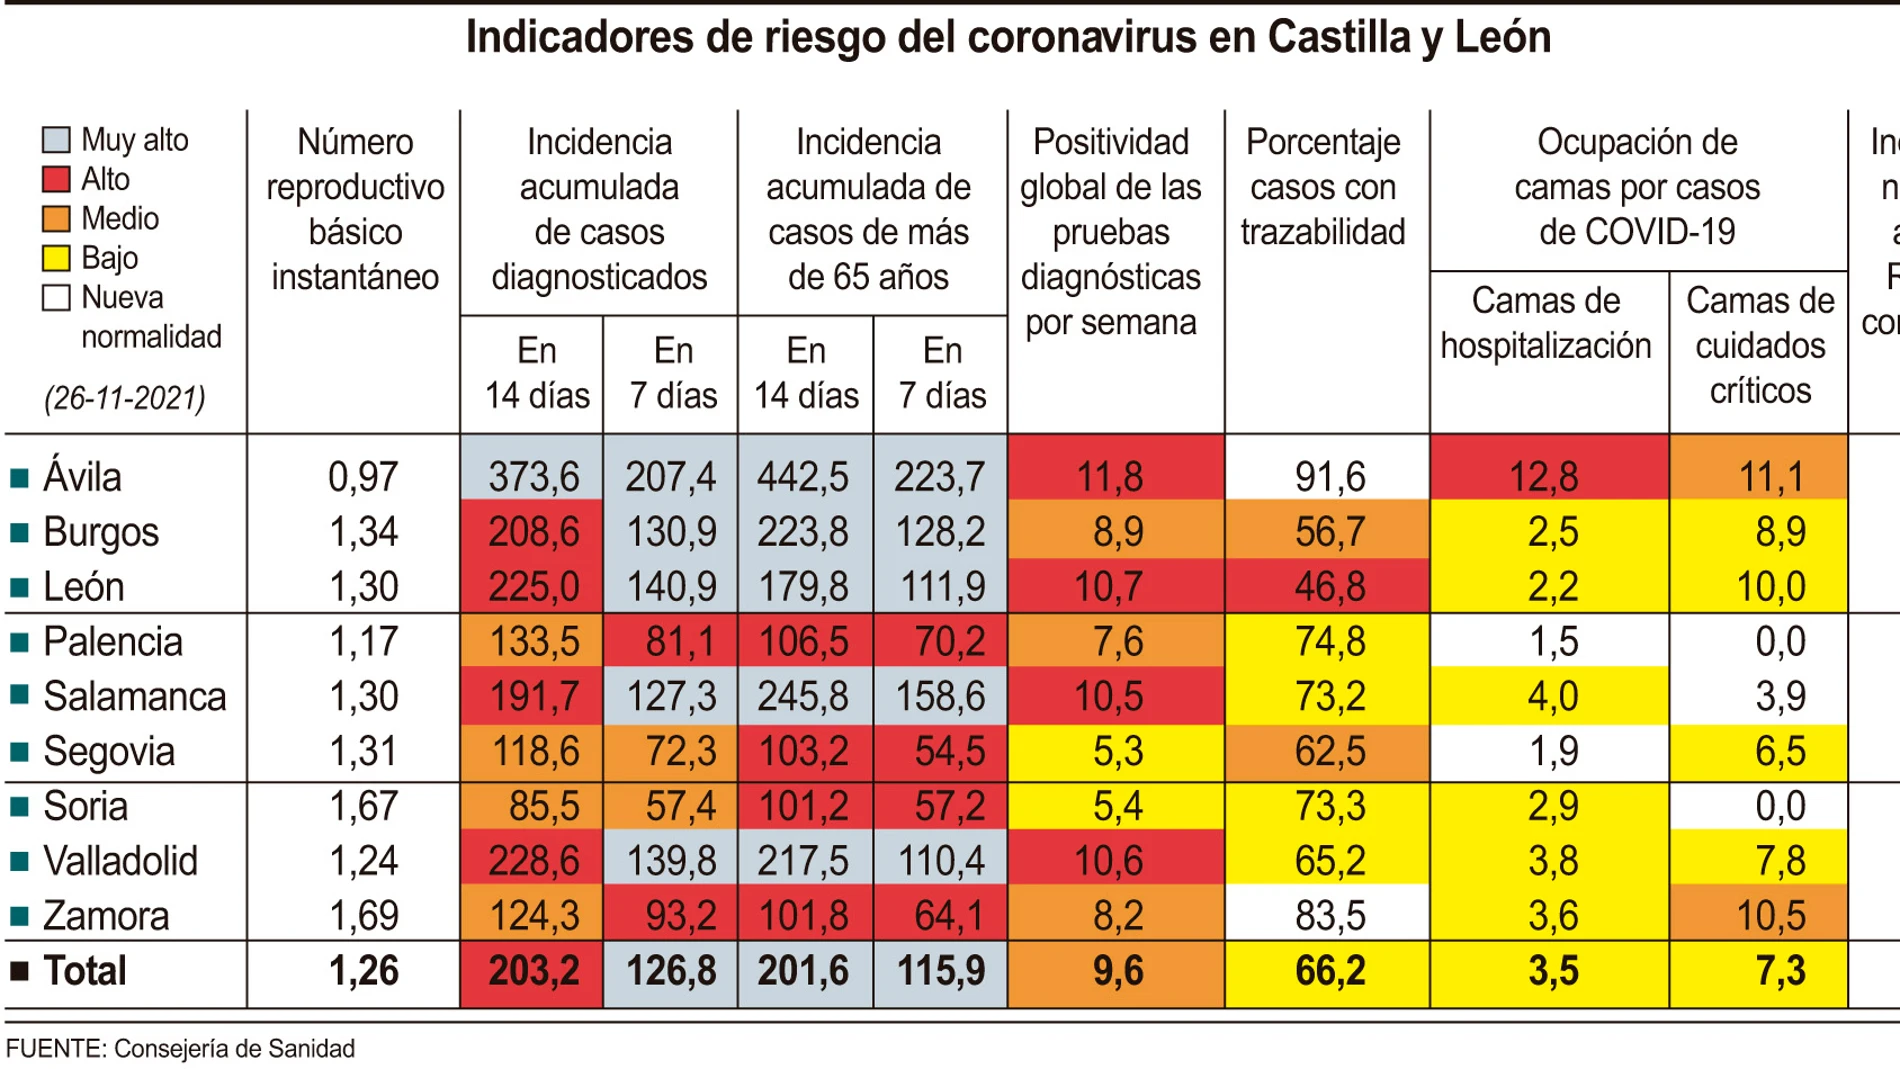 Indicadores de riesgo del coronavirus en Castilla y León